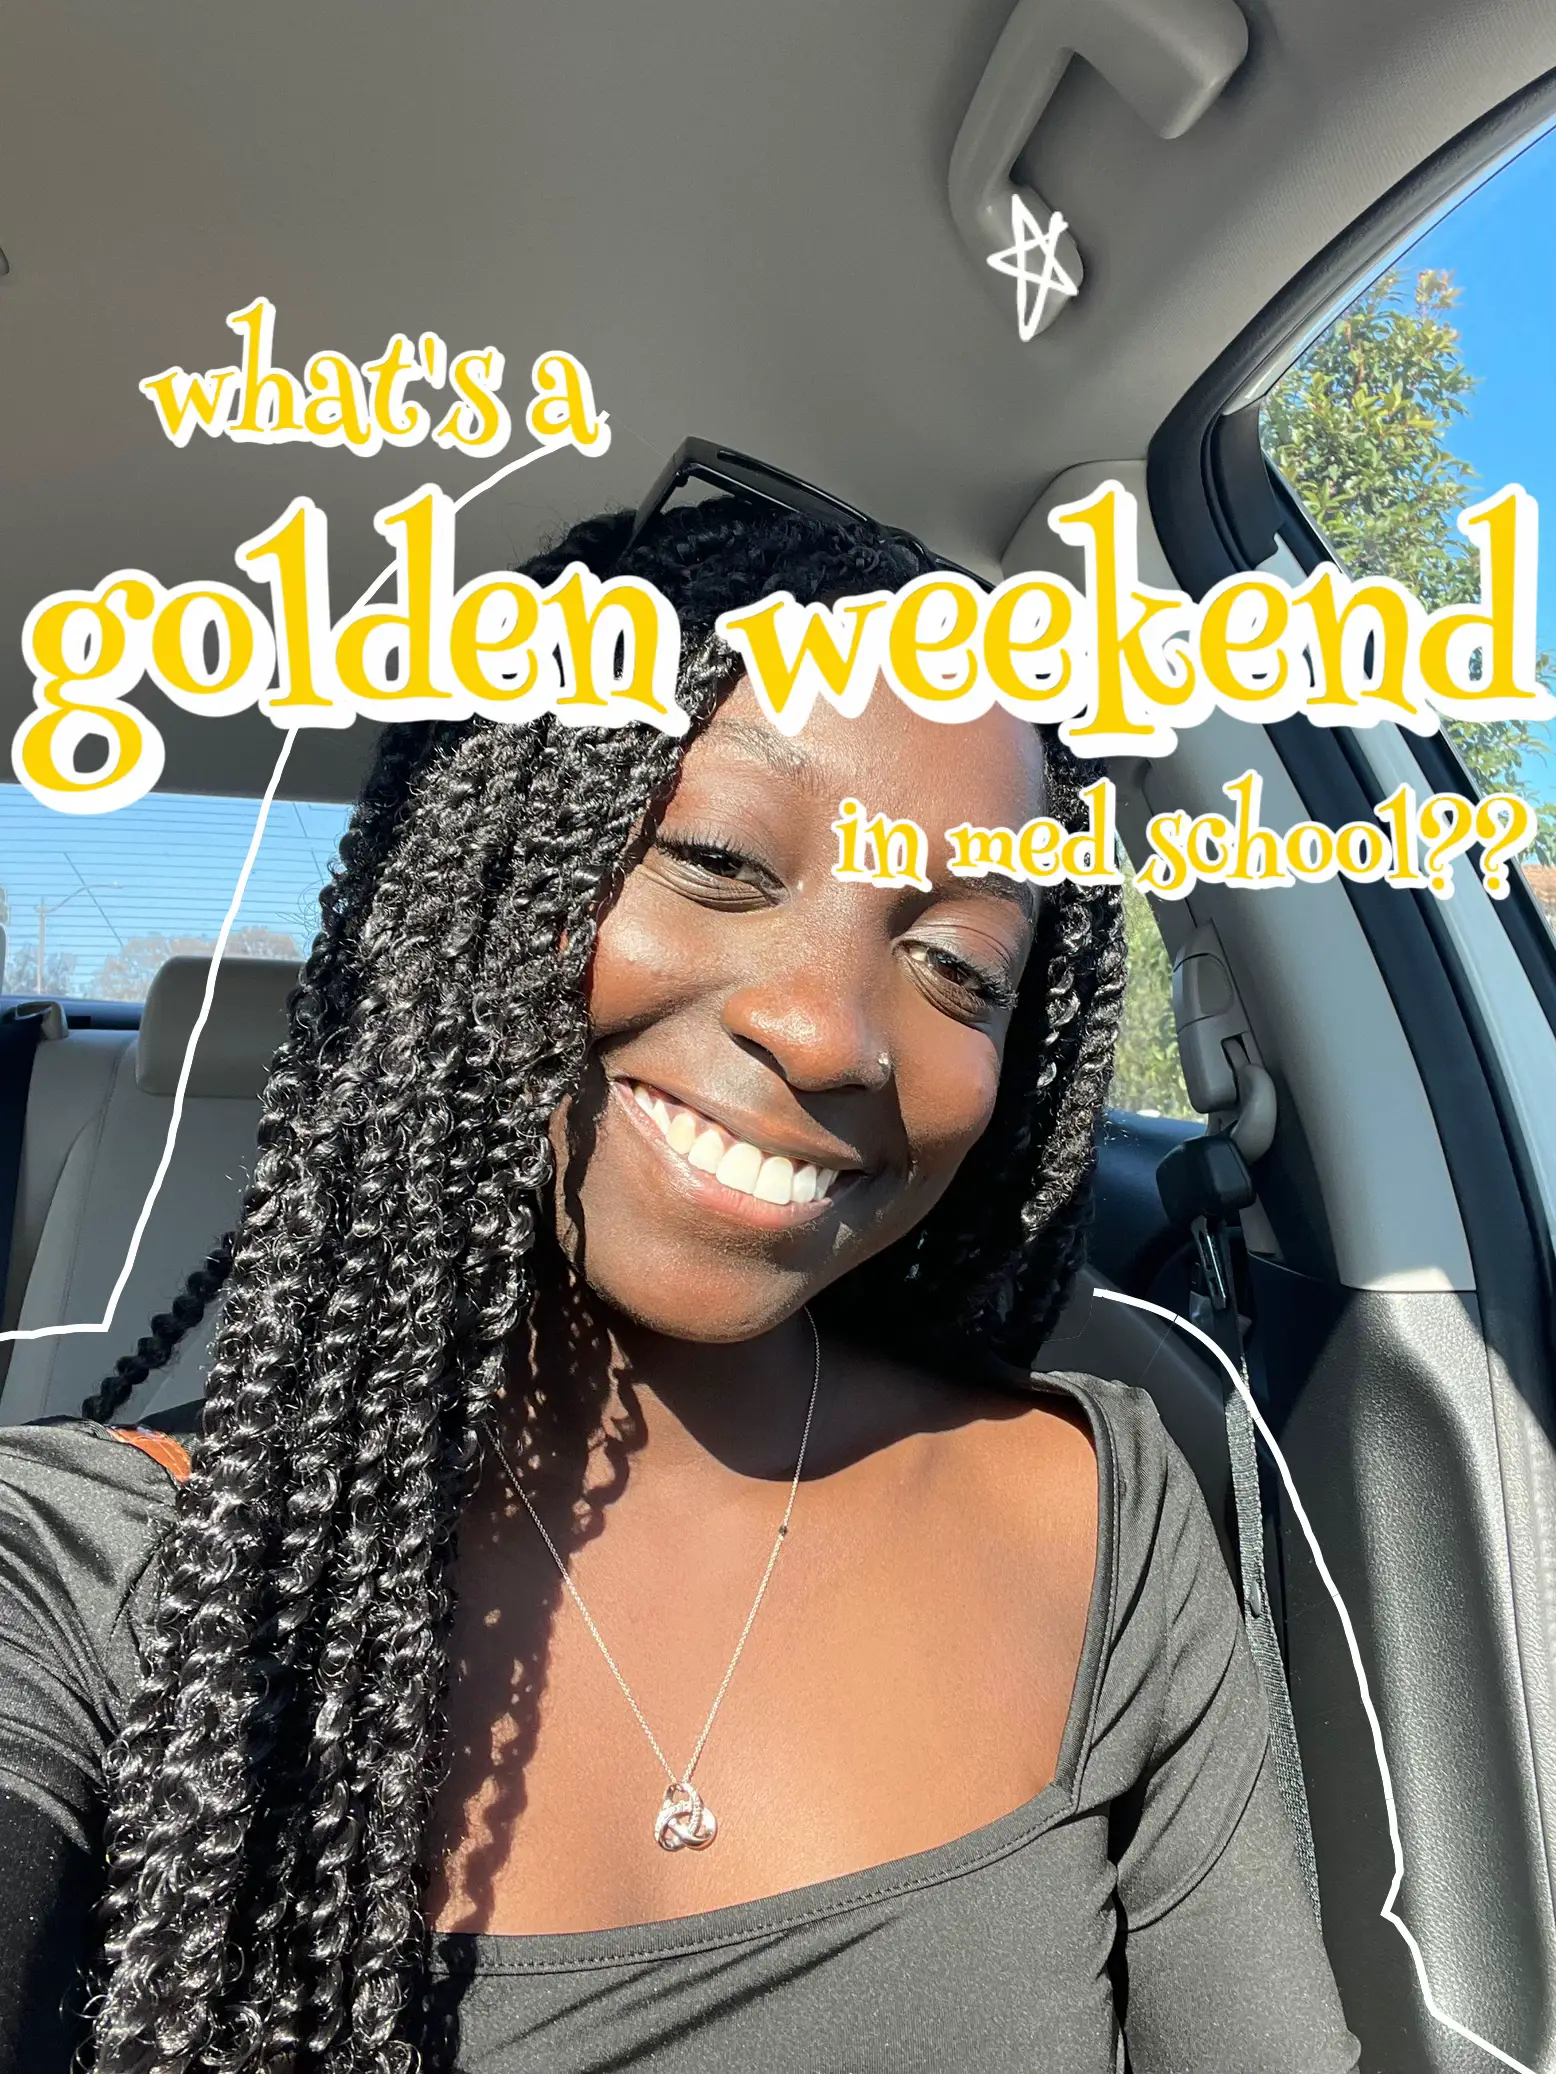 A golden weekend